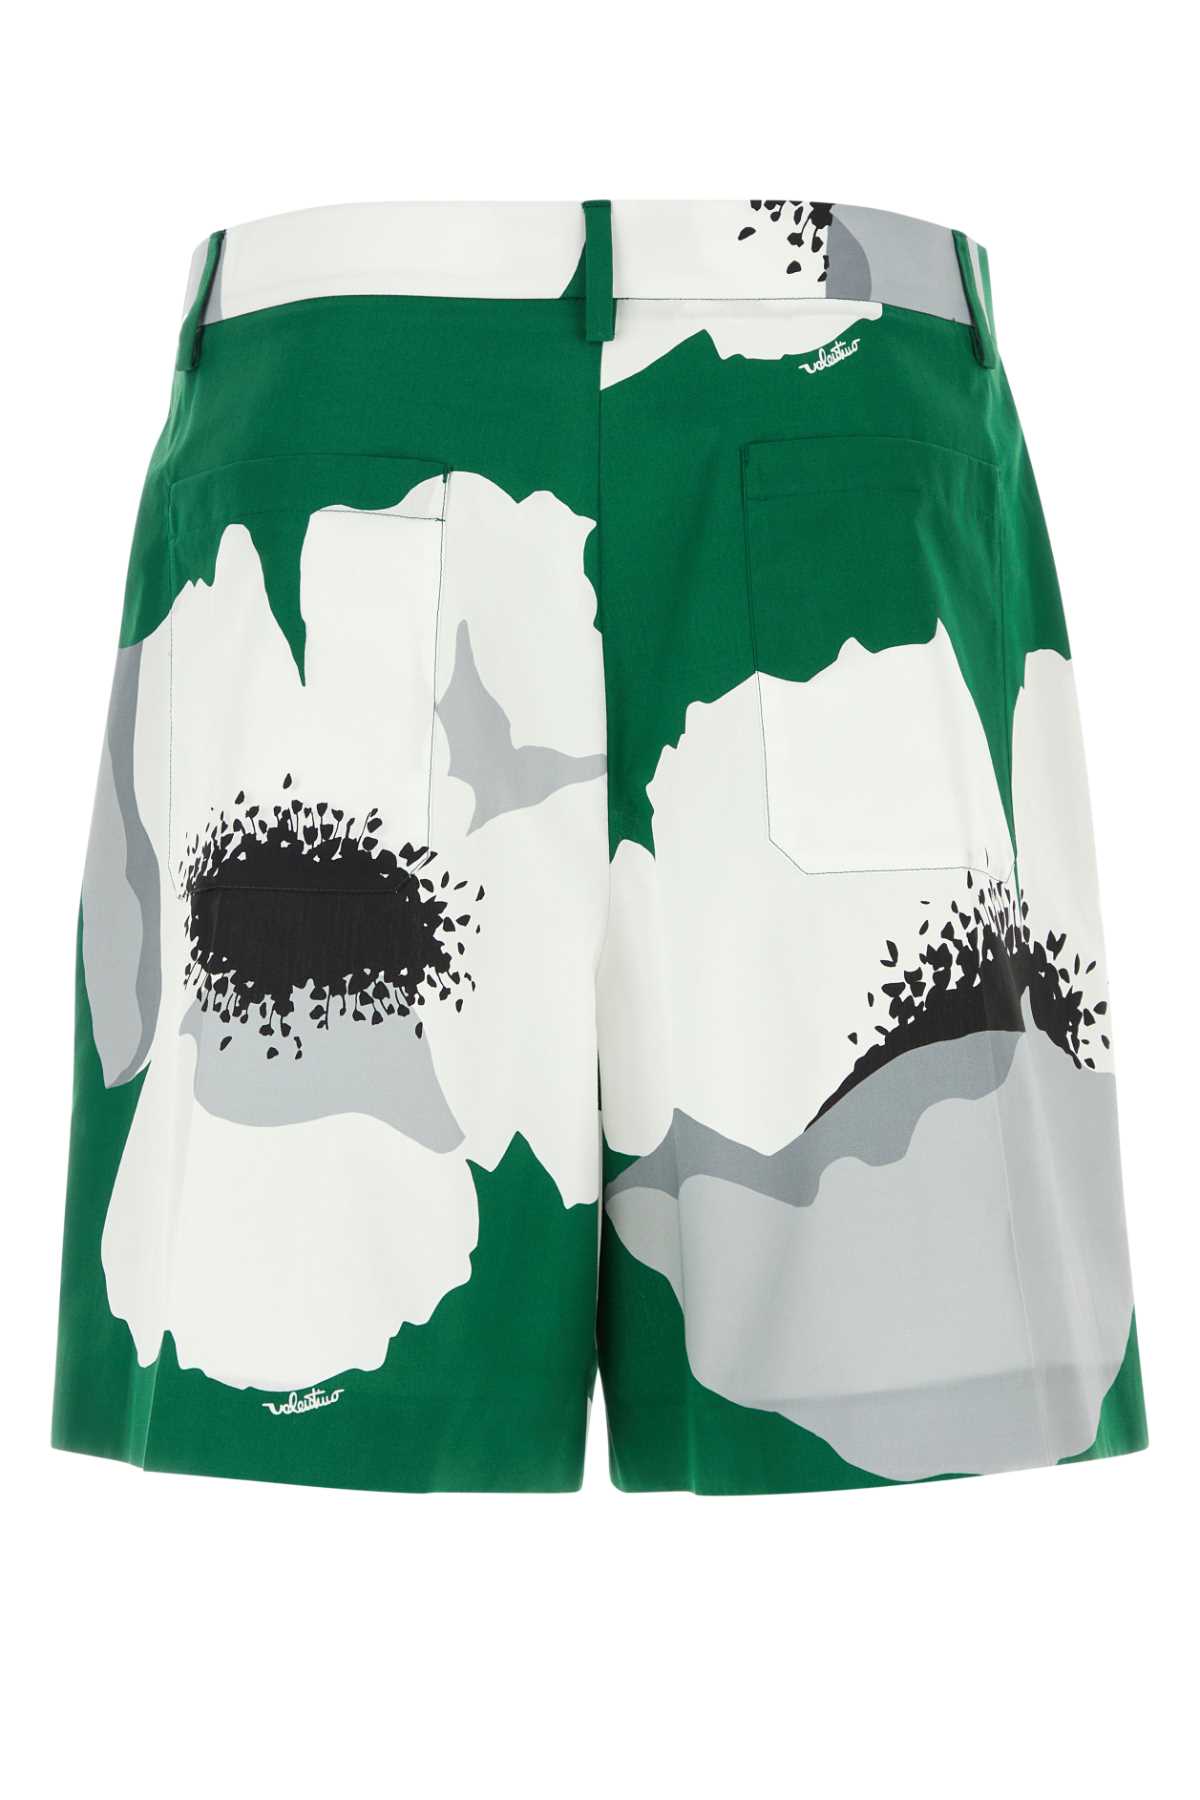 Valentino Printed Cotton Bermuda Shorts In Smeraldogrigio